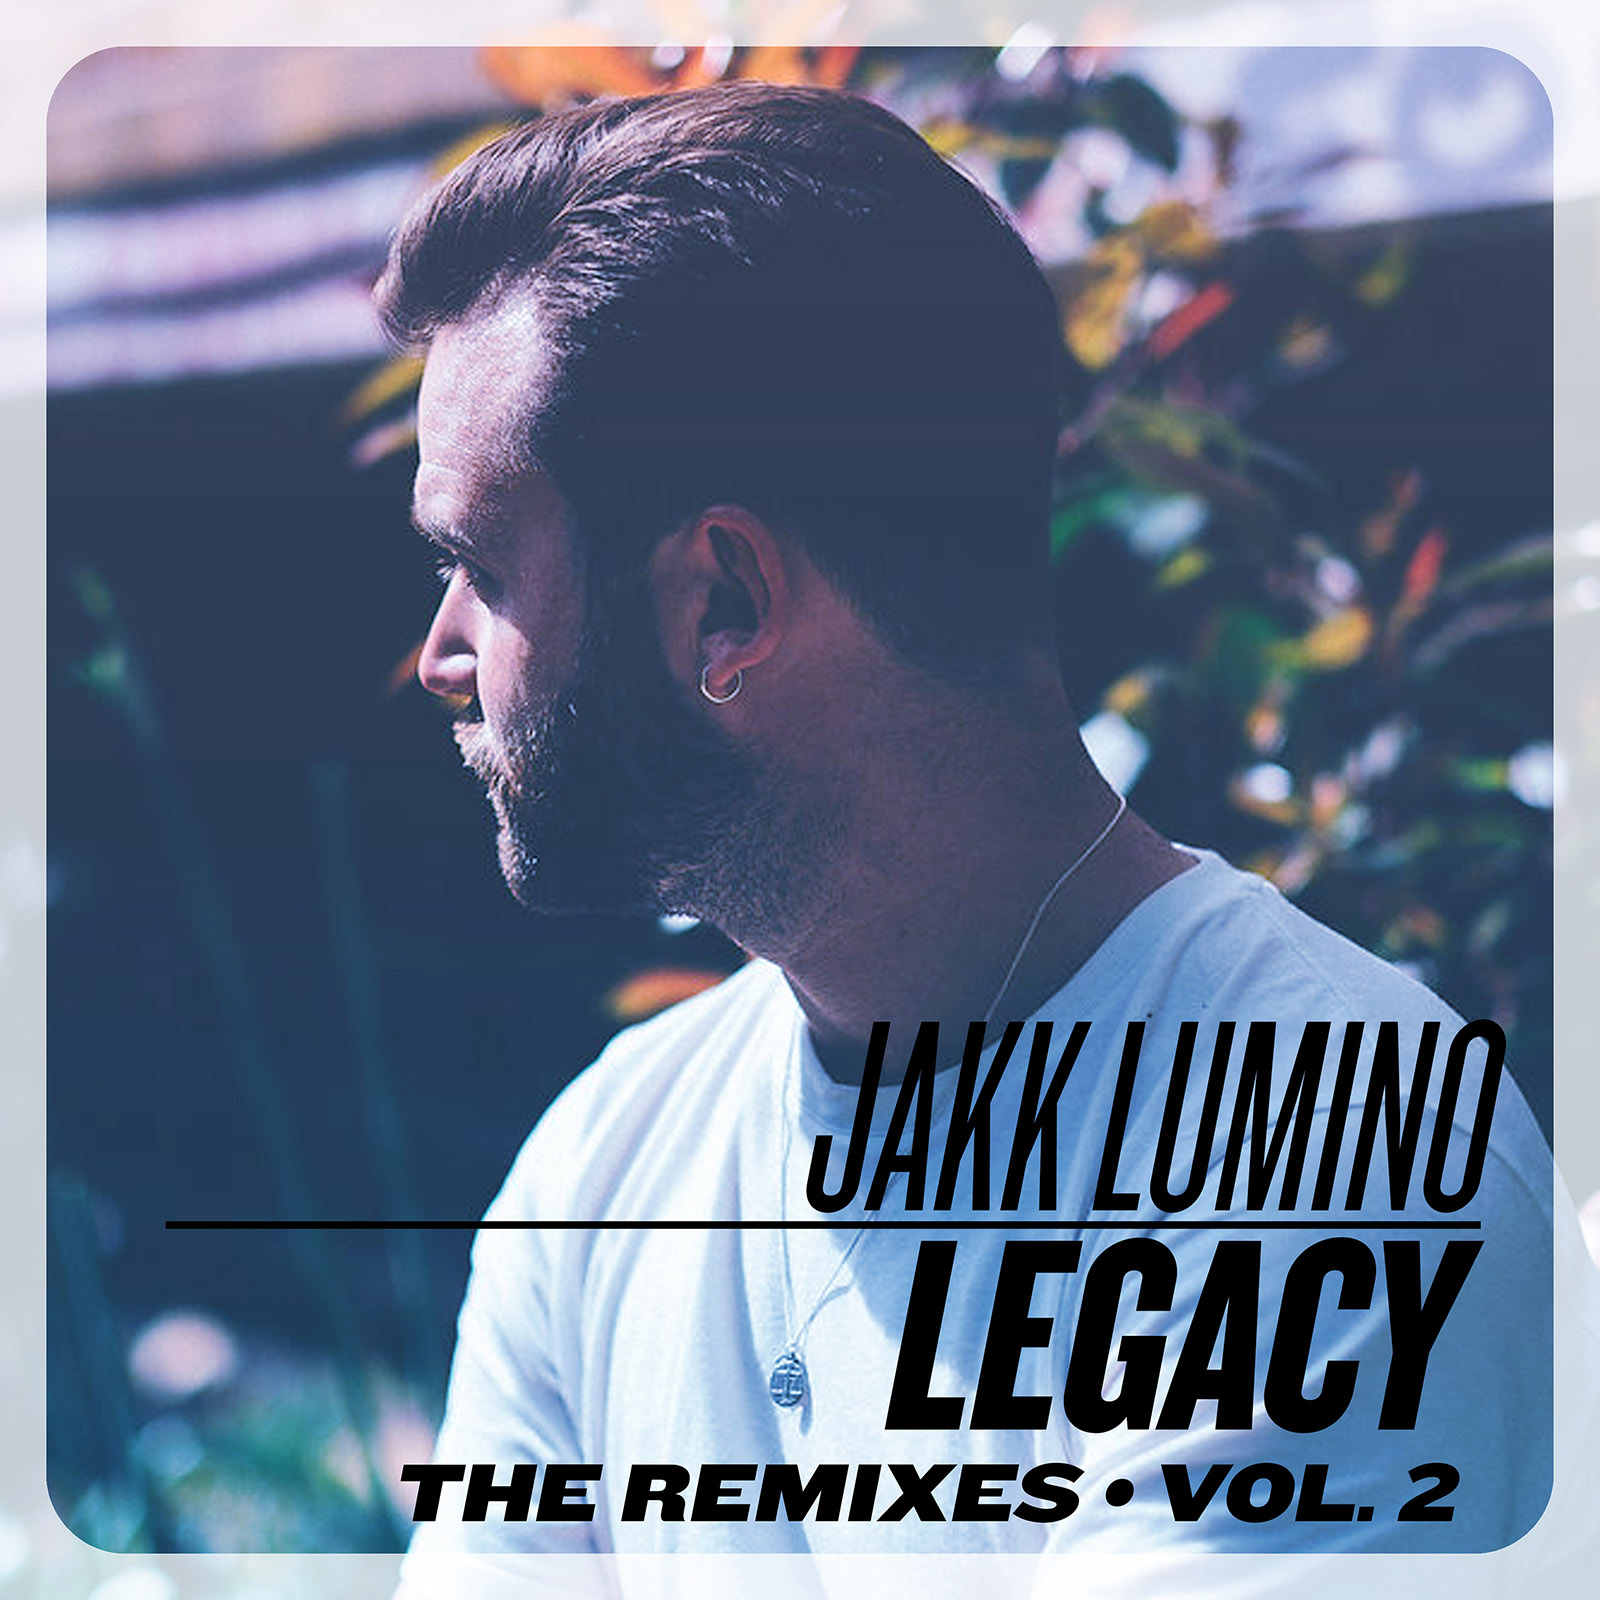 Jakk Lumino - ”Legacy” Remixes Vol. 2